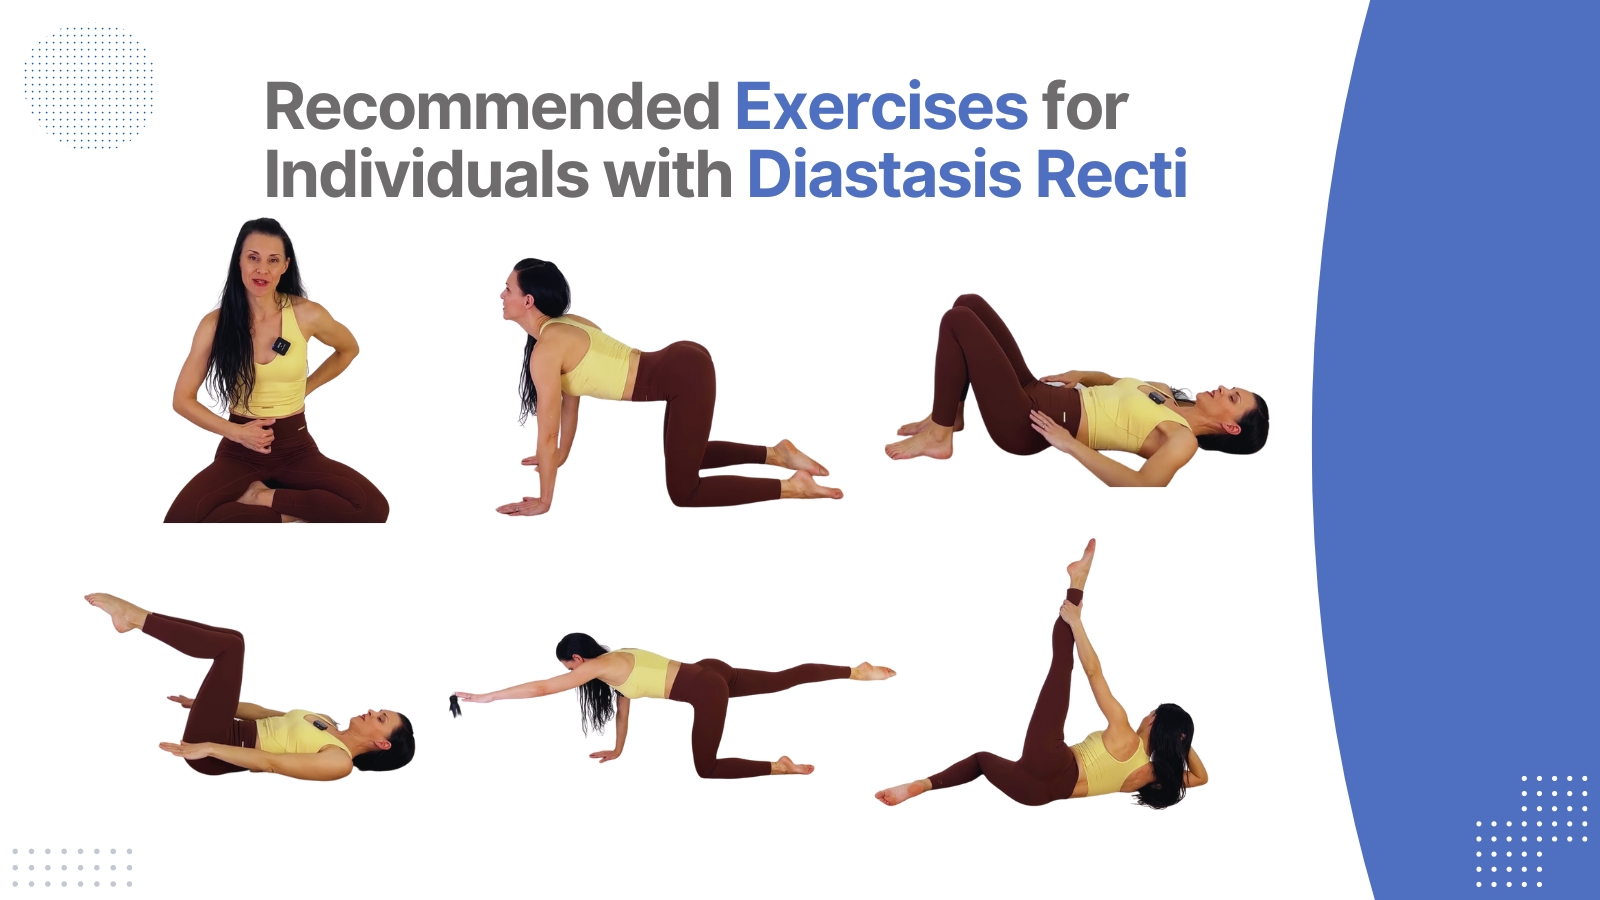 diastasis recti exercises